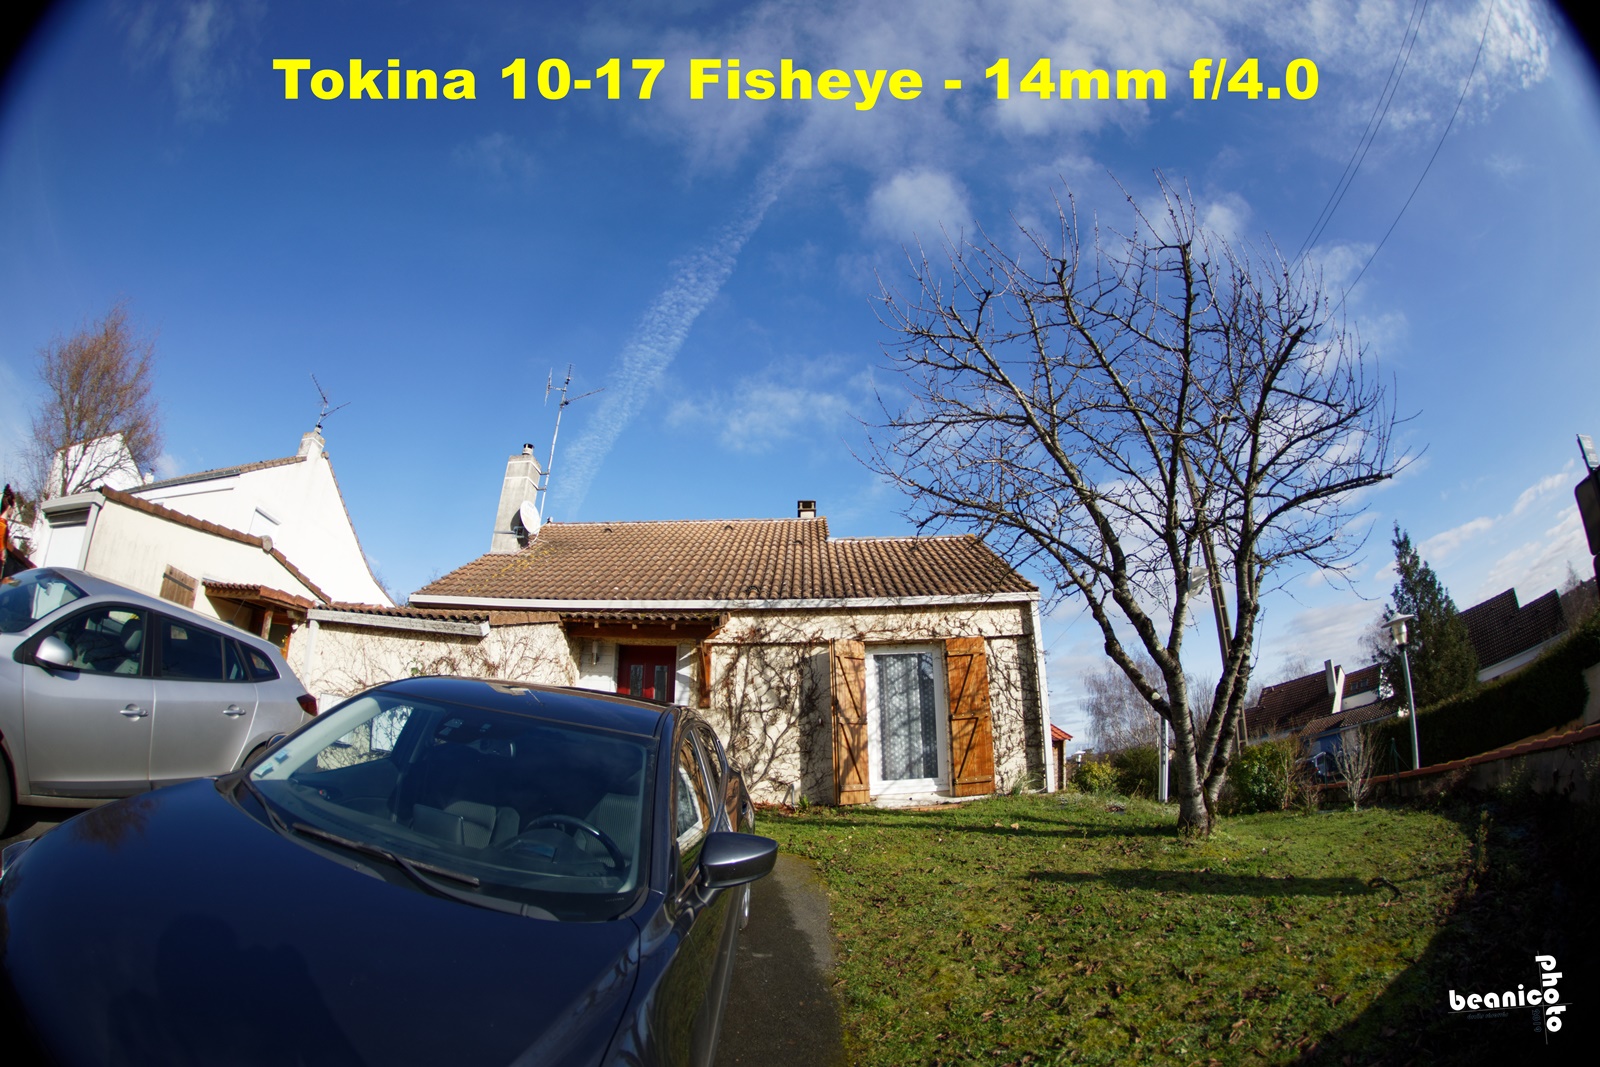 www.beanico-photo.fr - test du Tokina Fisheye 10-17mm